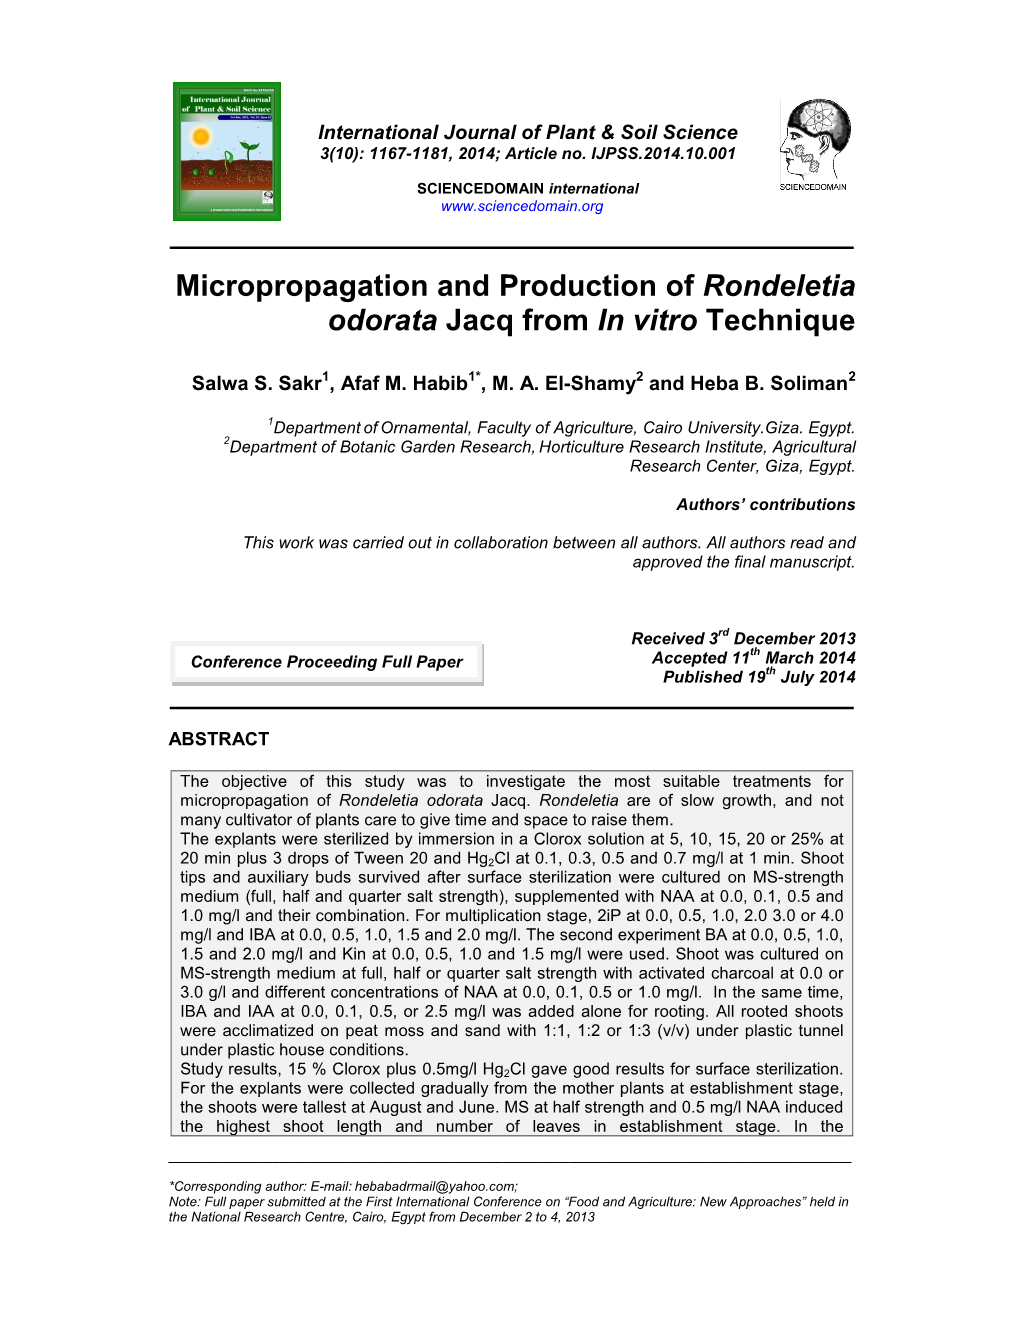 Micropropagation and Production of Rondeletia Odorata Jacq from in Vitro Technique